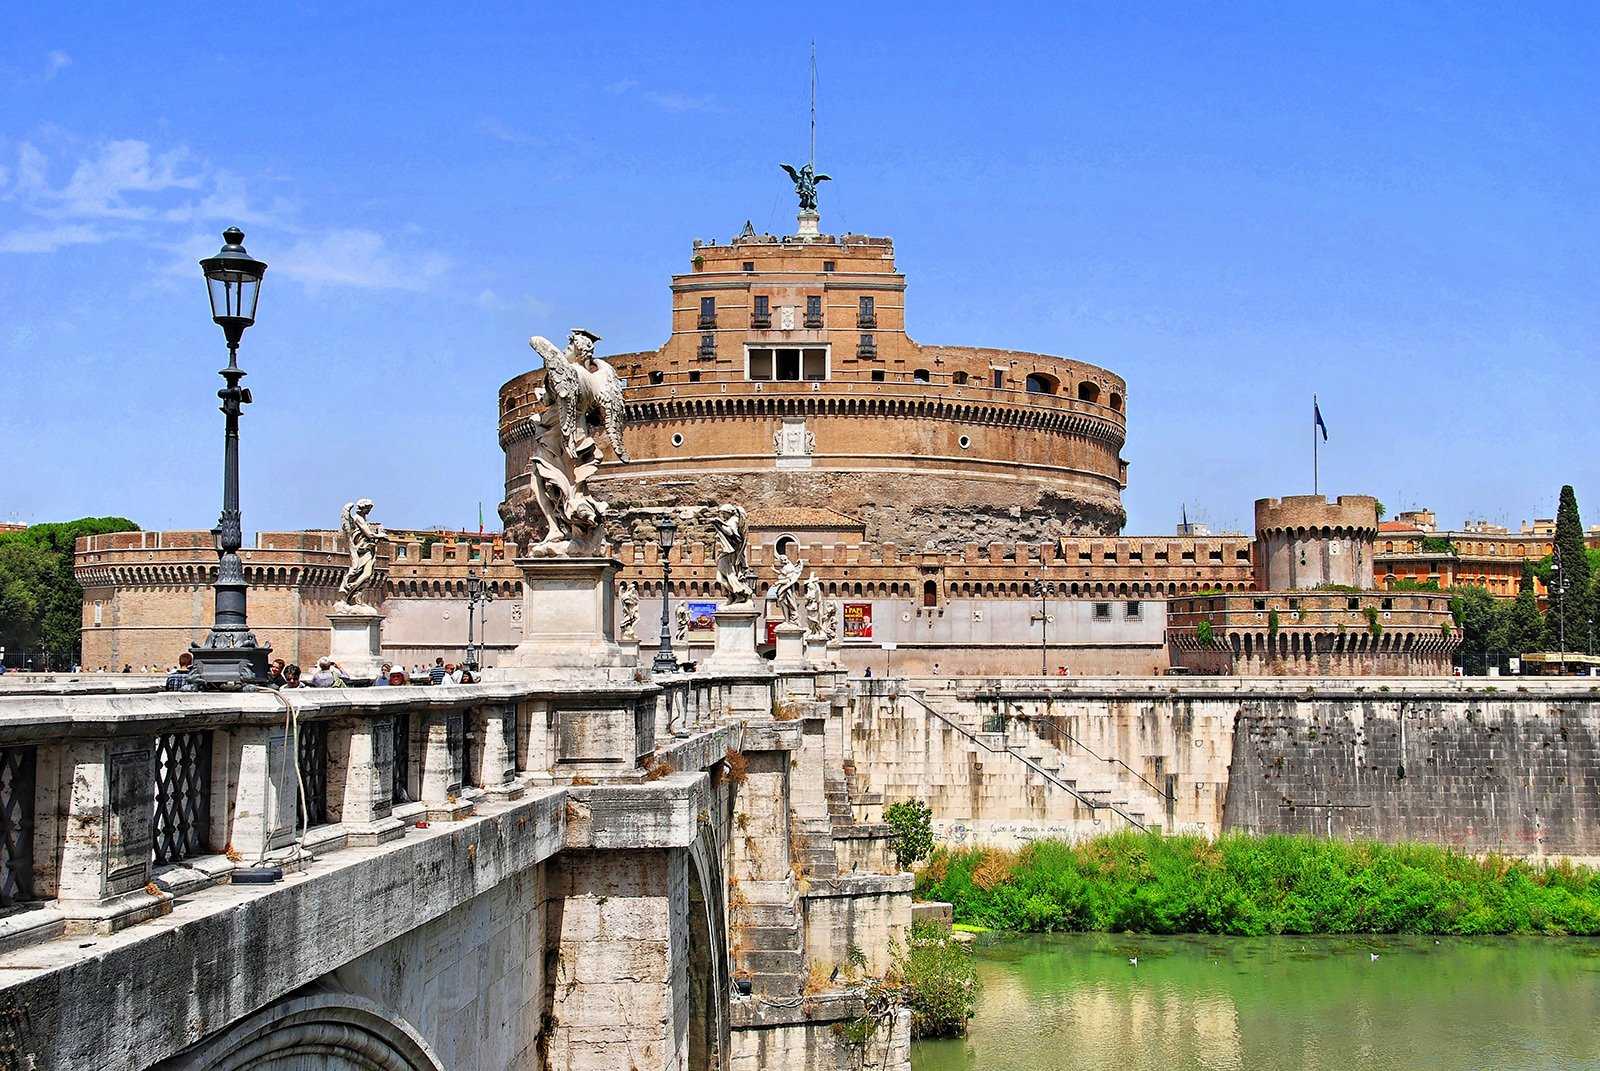 Замок Сант-Анджело представляет собой памятник истории и архитектуры периода Древнего Рима Ни один путеводитель по Риму не обойдет стороной этот замок и поставит его на одно из первых мест по рекомендациям для посещения На его территории расположено